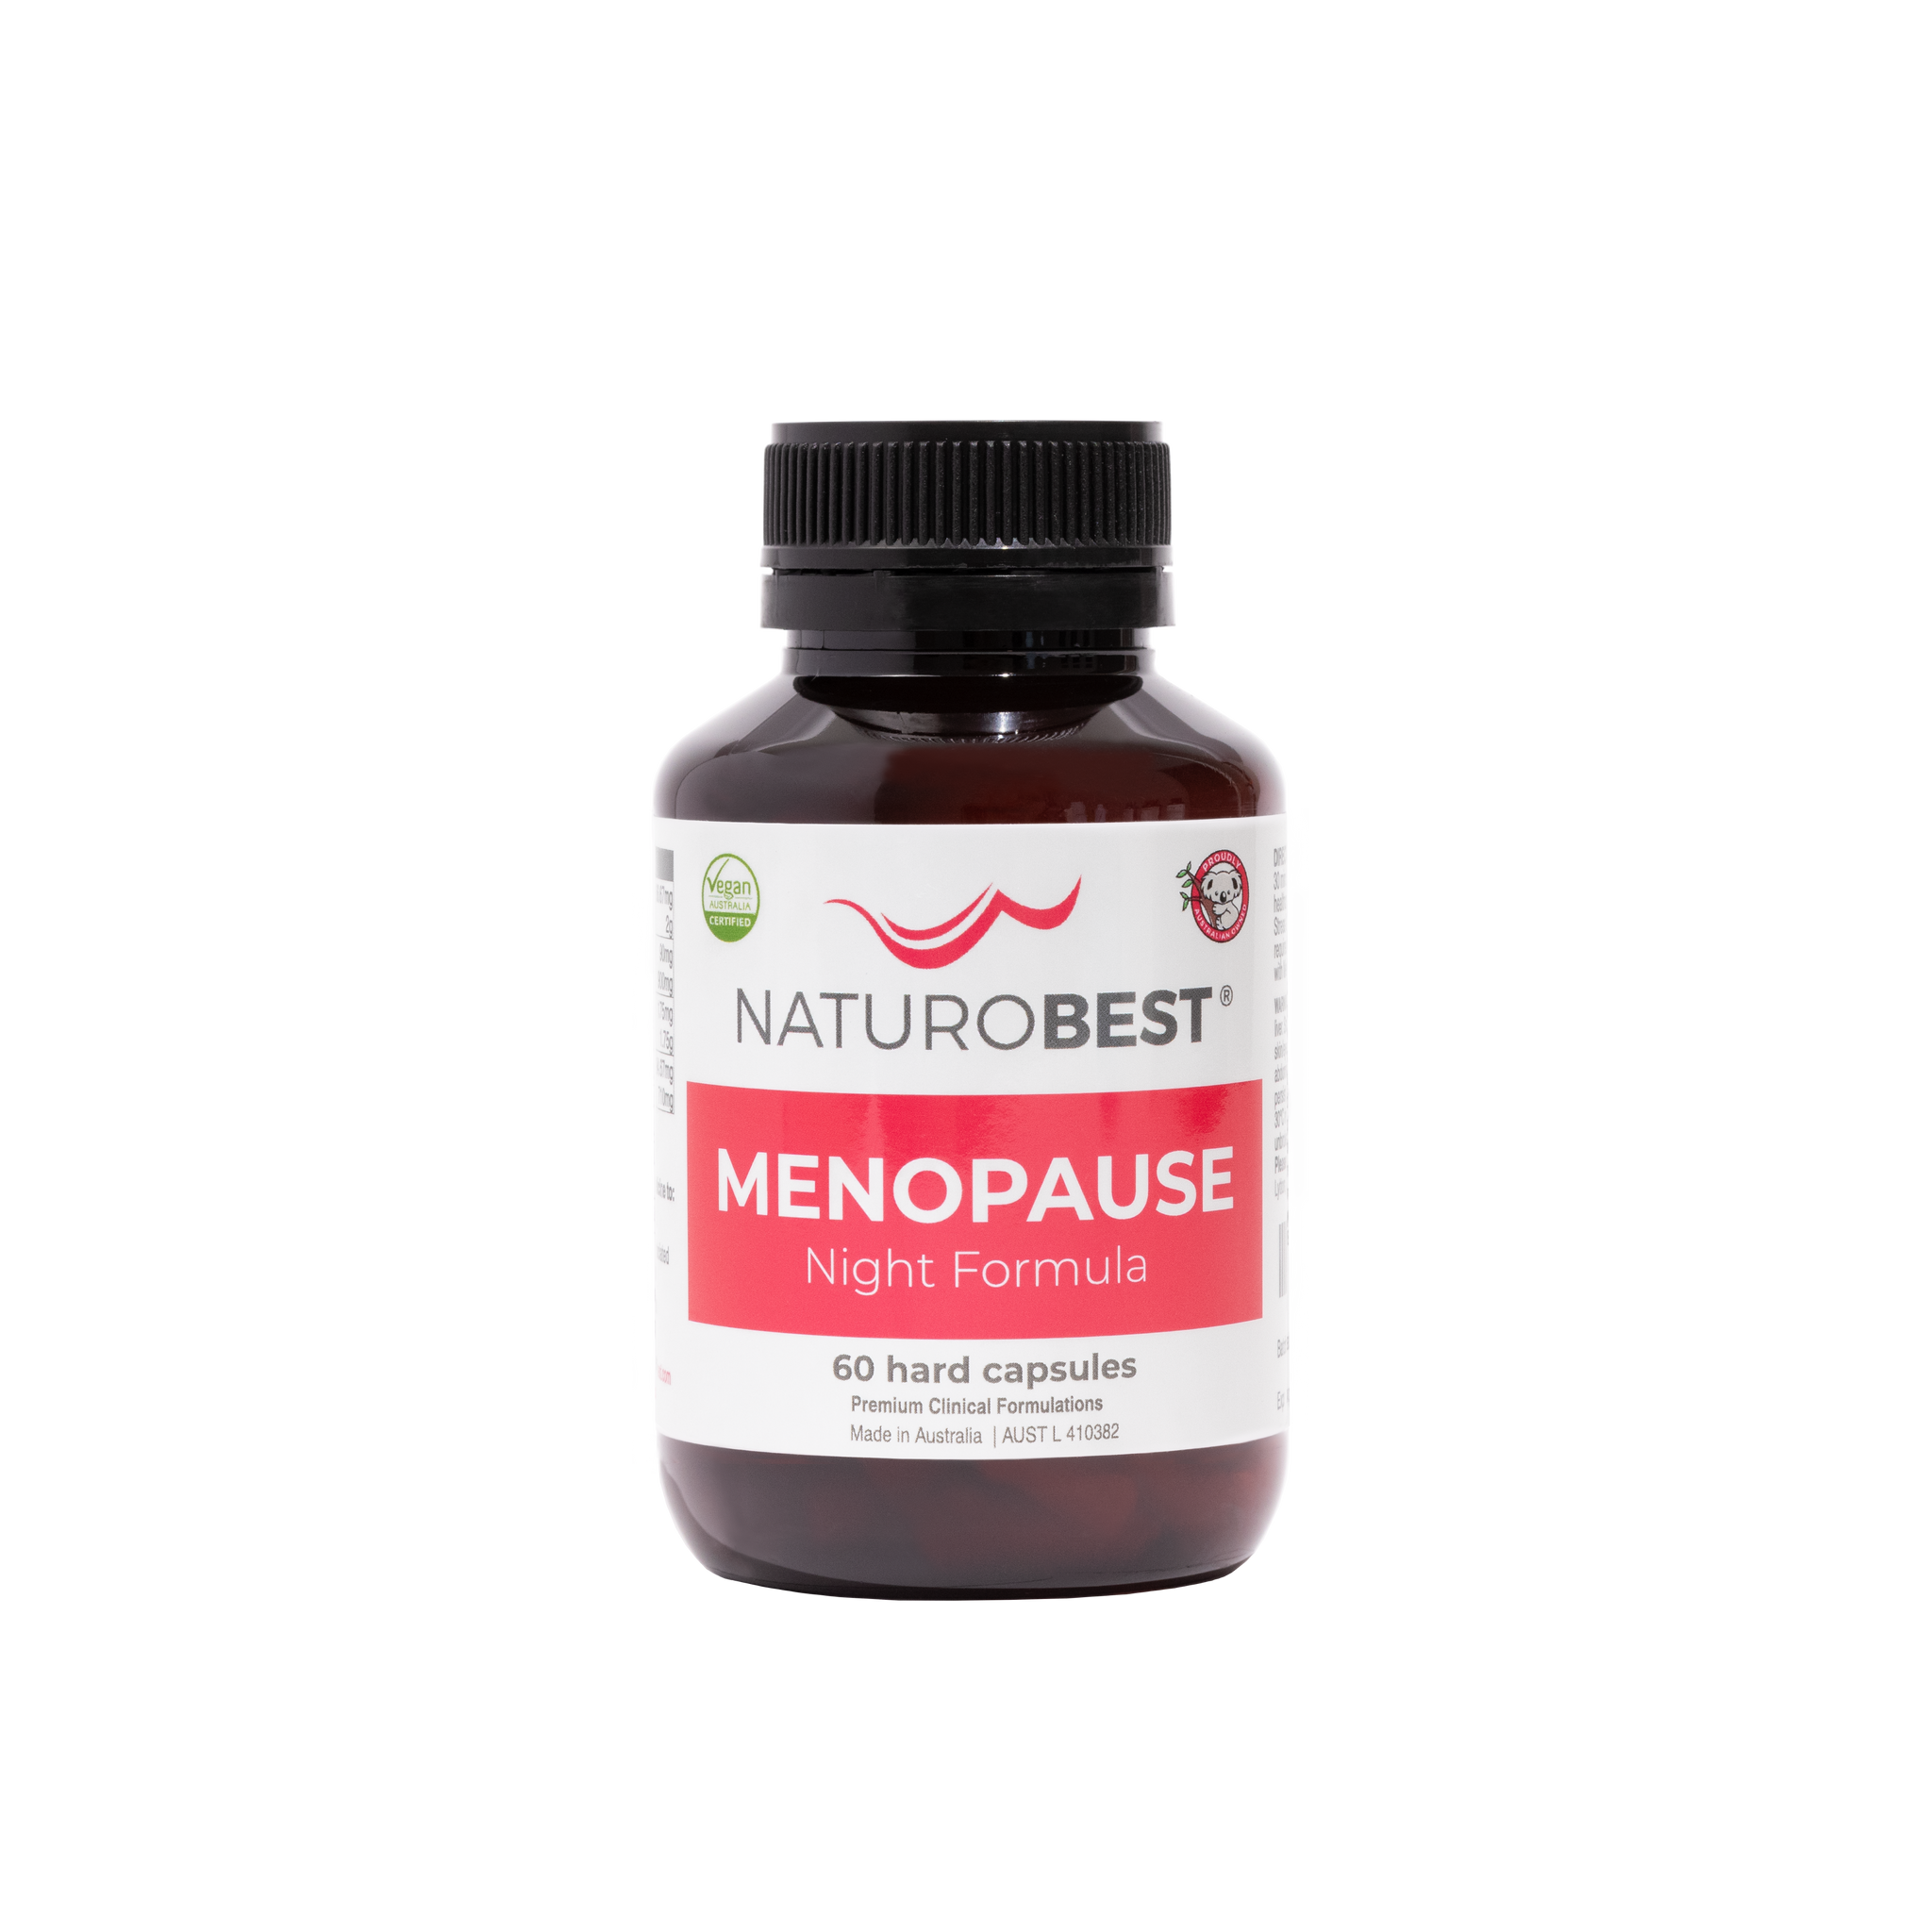 Menopause Night Formula - Carton